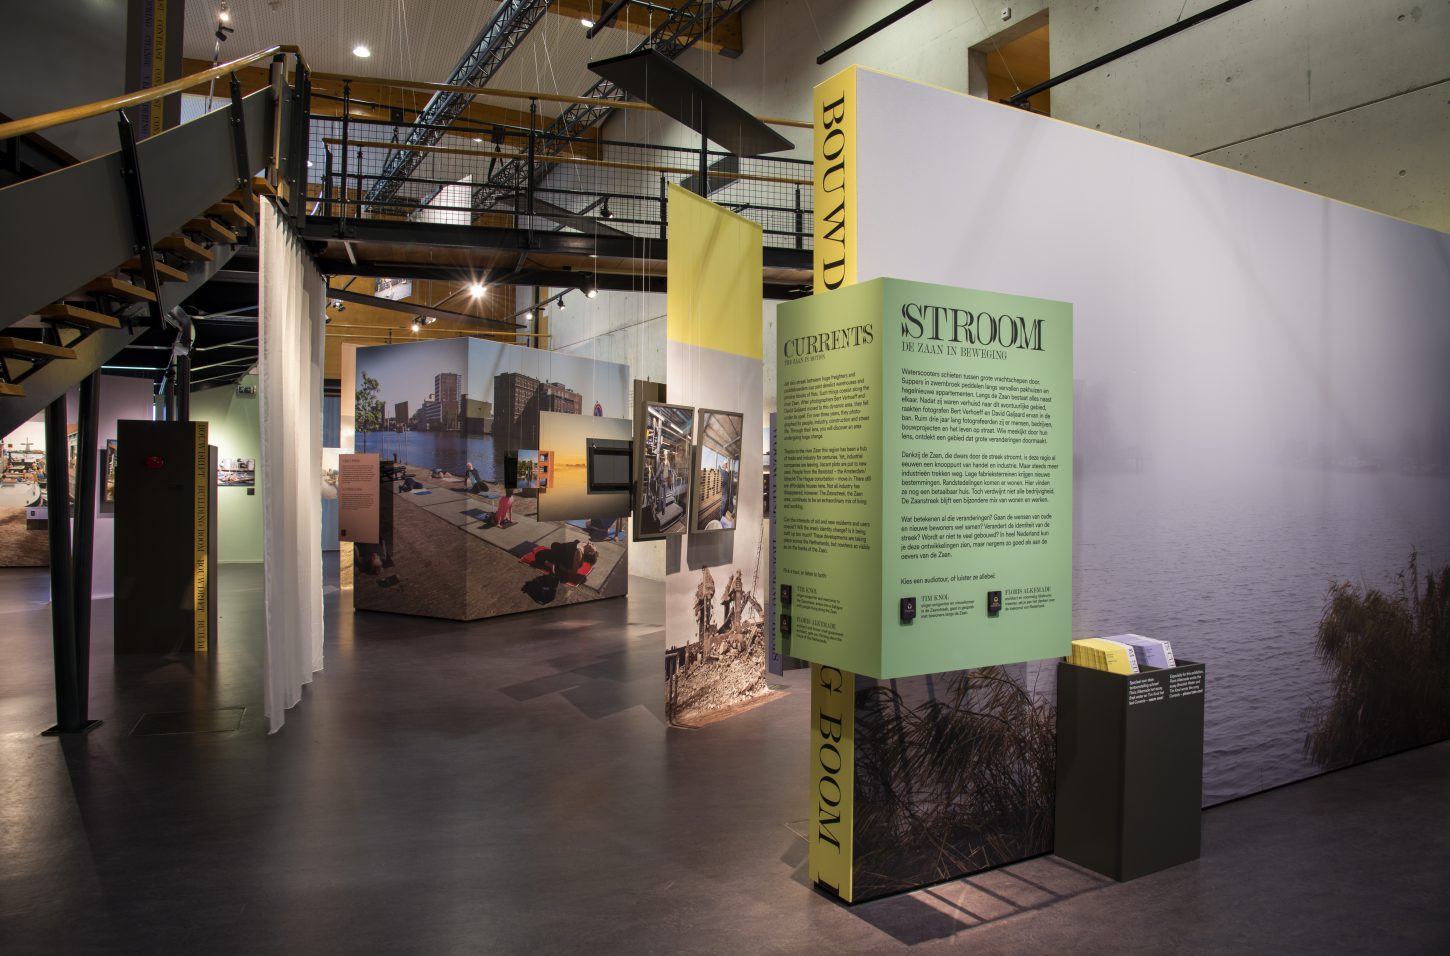 Introductie tentoonstelling Stroom in Zaans Museum, zicht op introductie-tekst en achtelriggende zaal